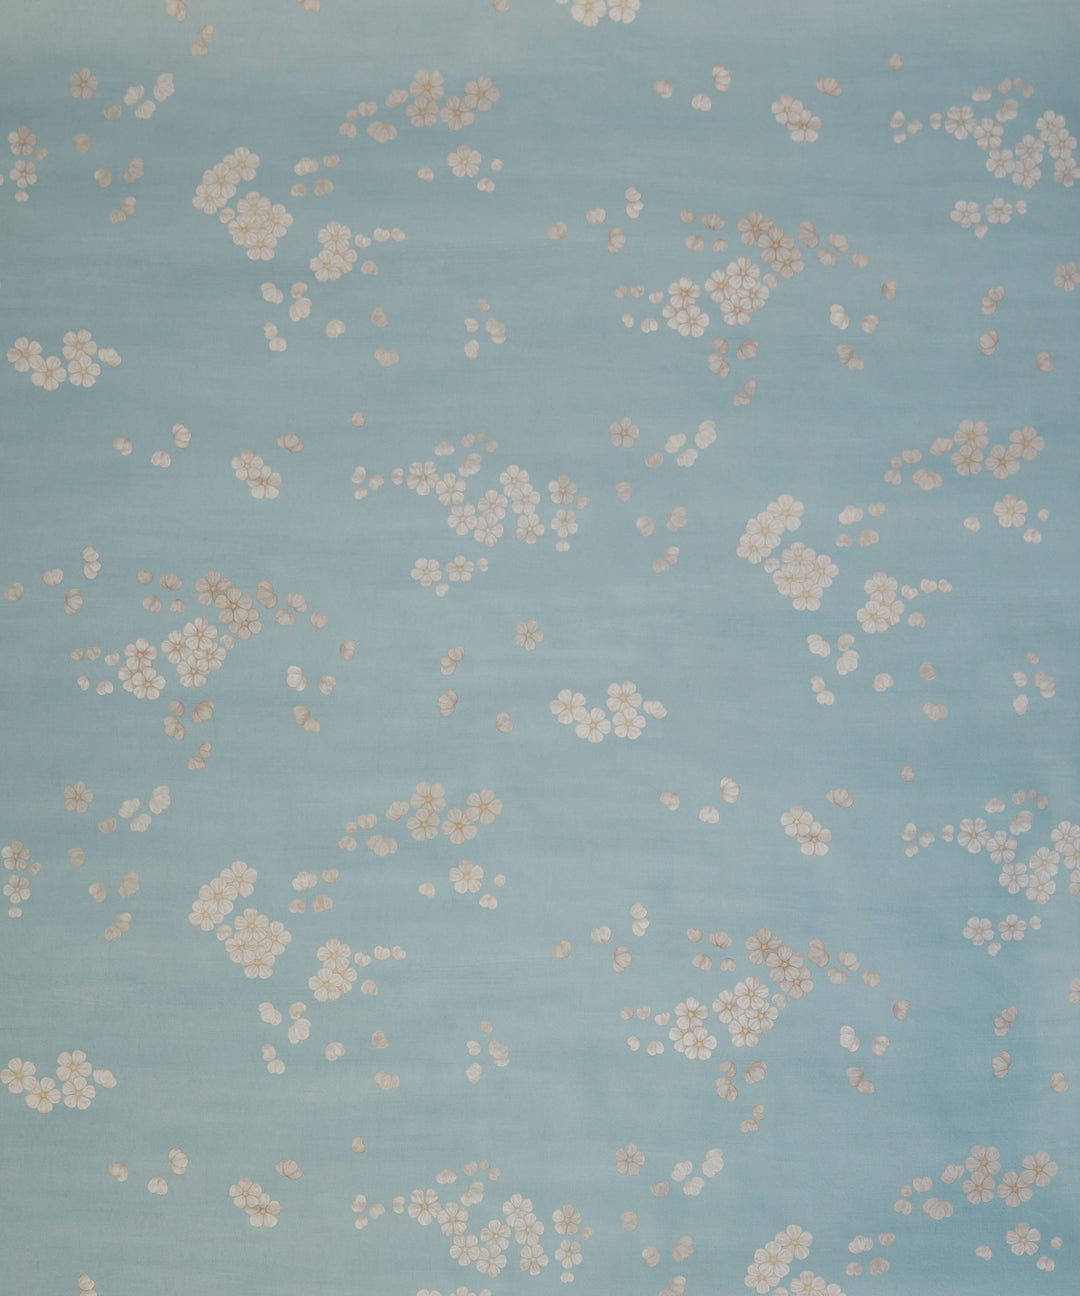 botanical-atlas-sakura-wallpaper-blue-salvia-baby-blue-blossom-scattered